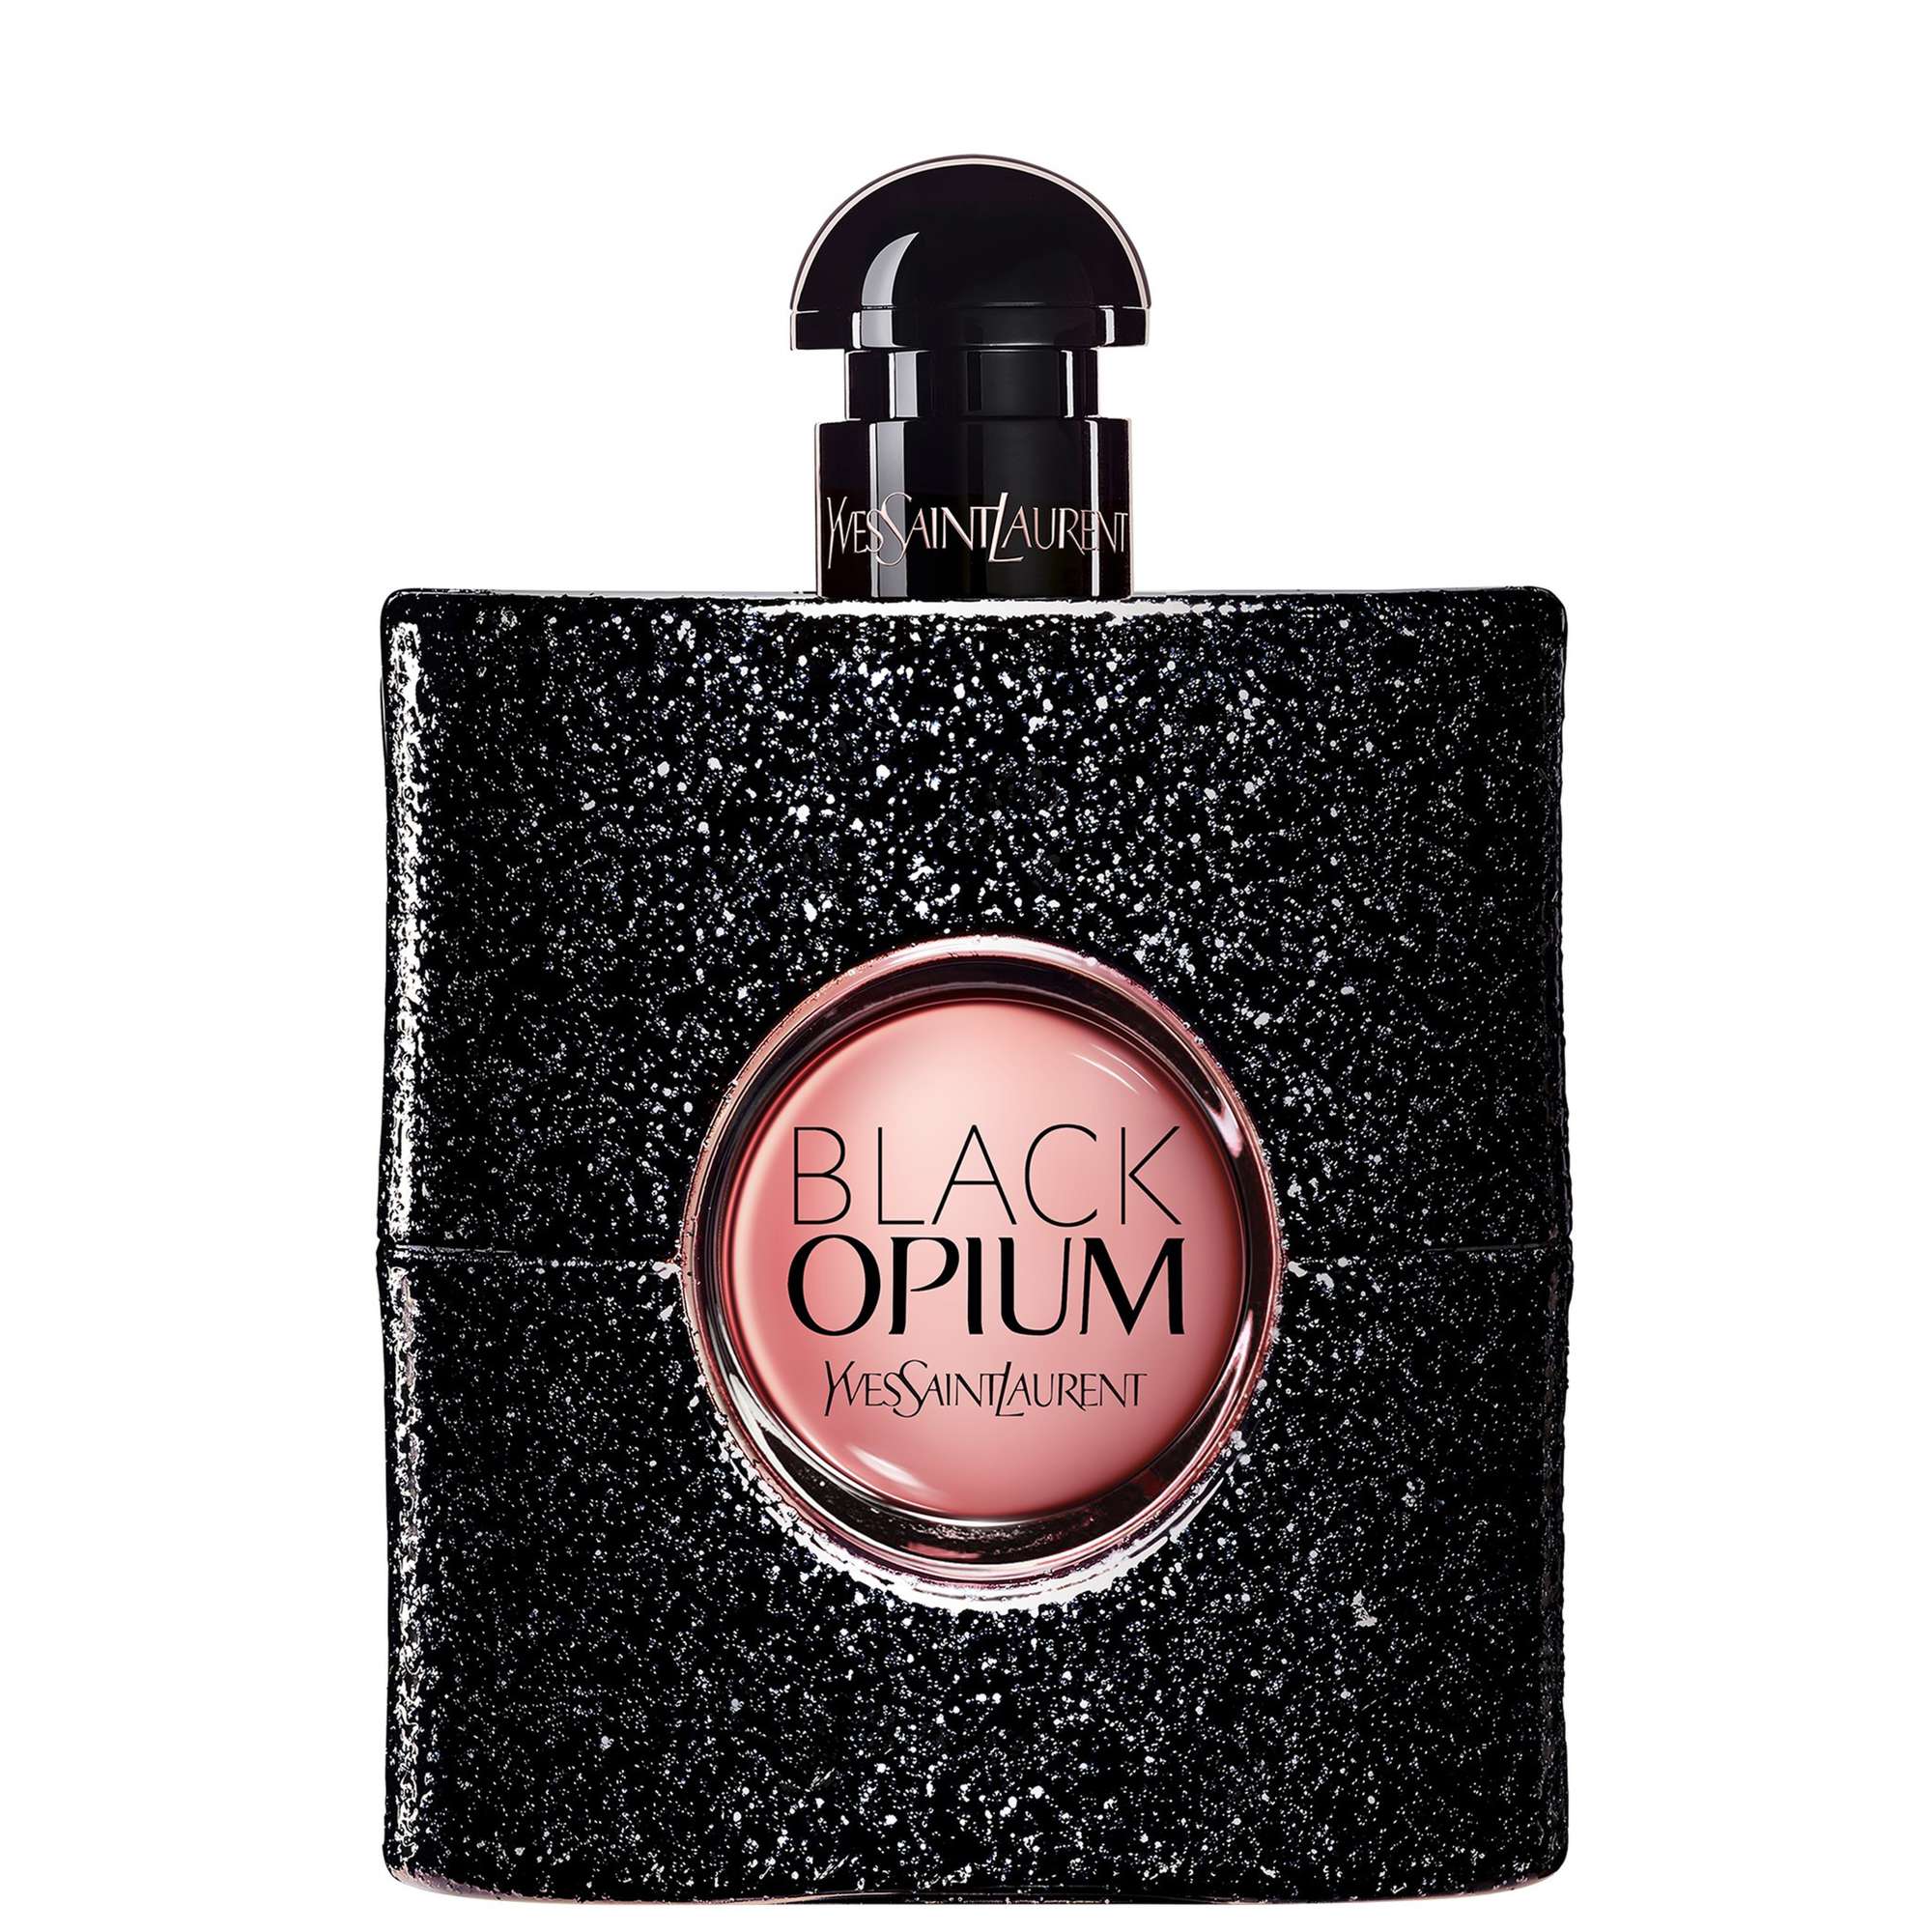 Photos - Women's Fragrance Yves Saint Laurent Black Opium Eau de Parfum Spray 90ml 